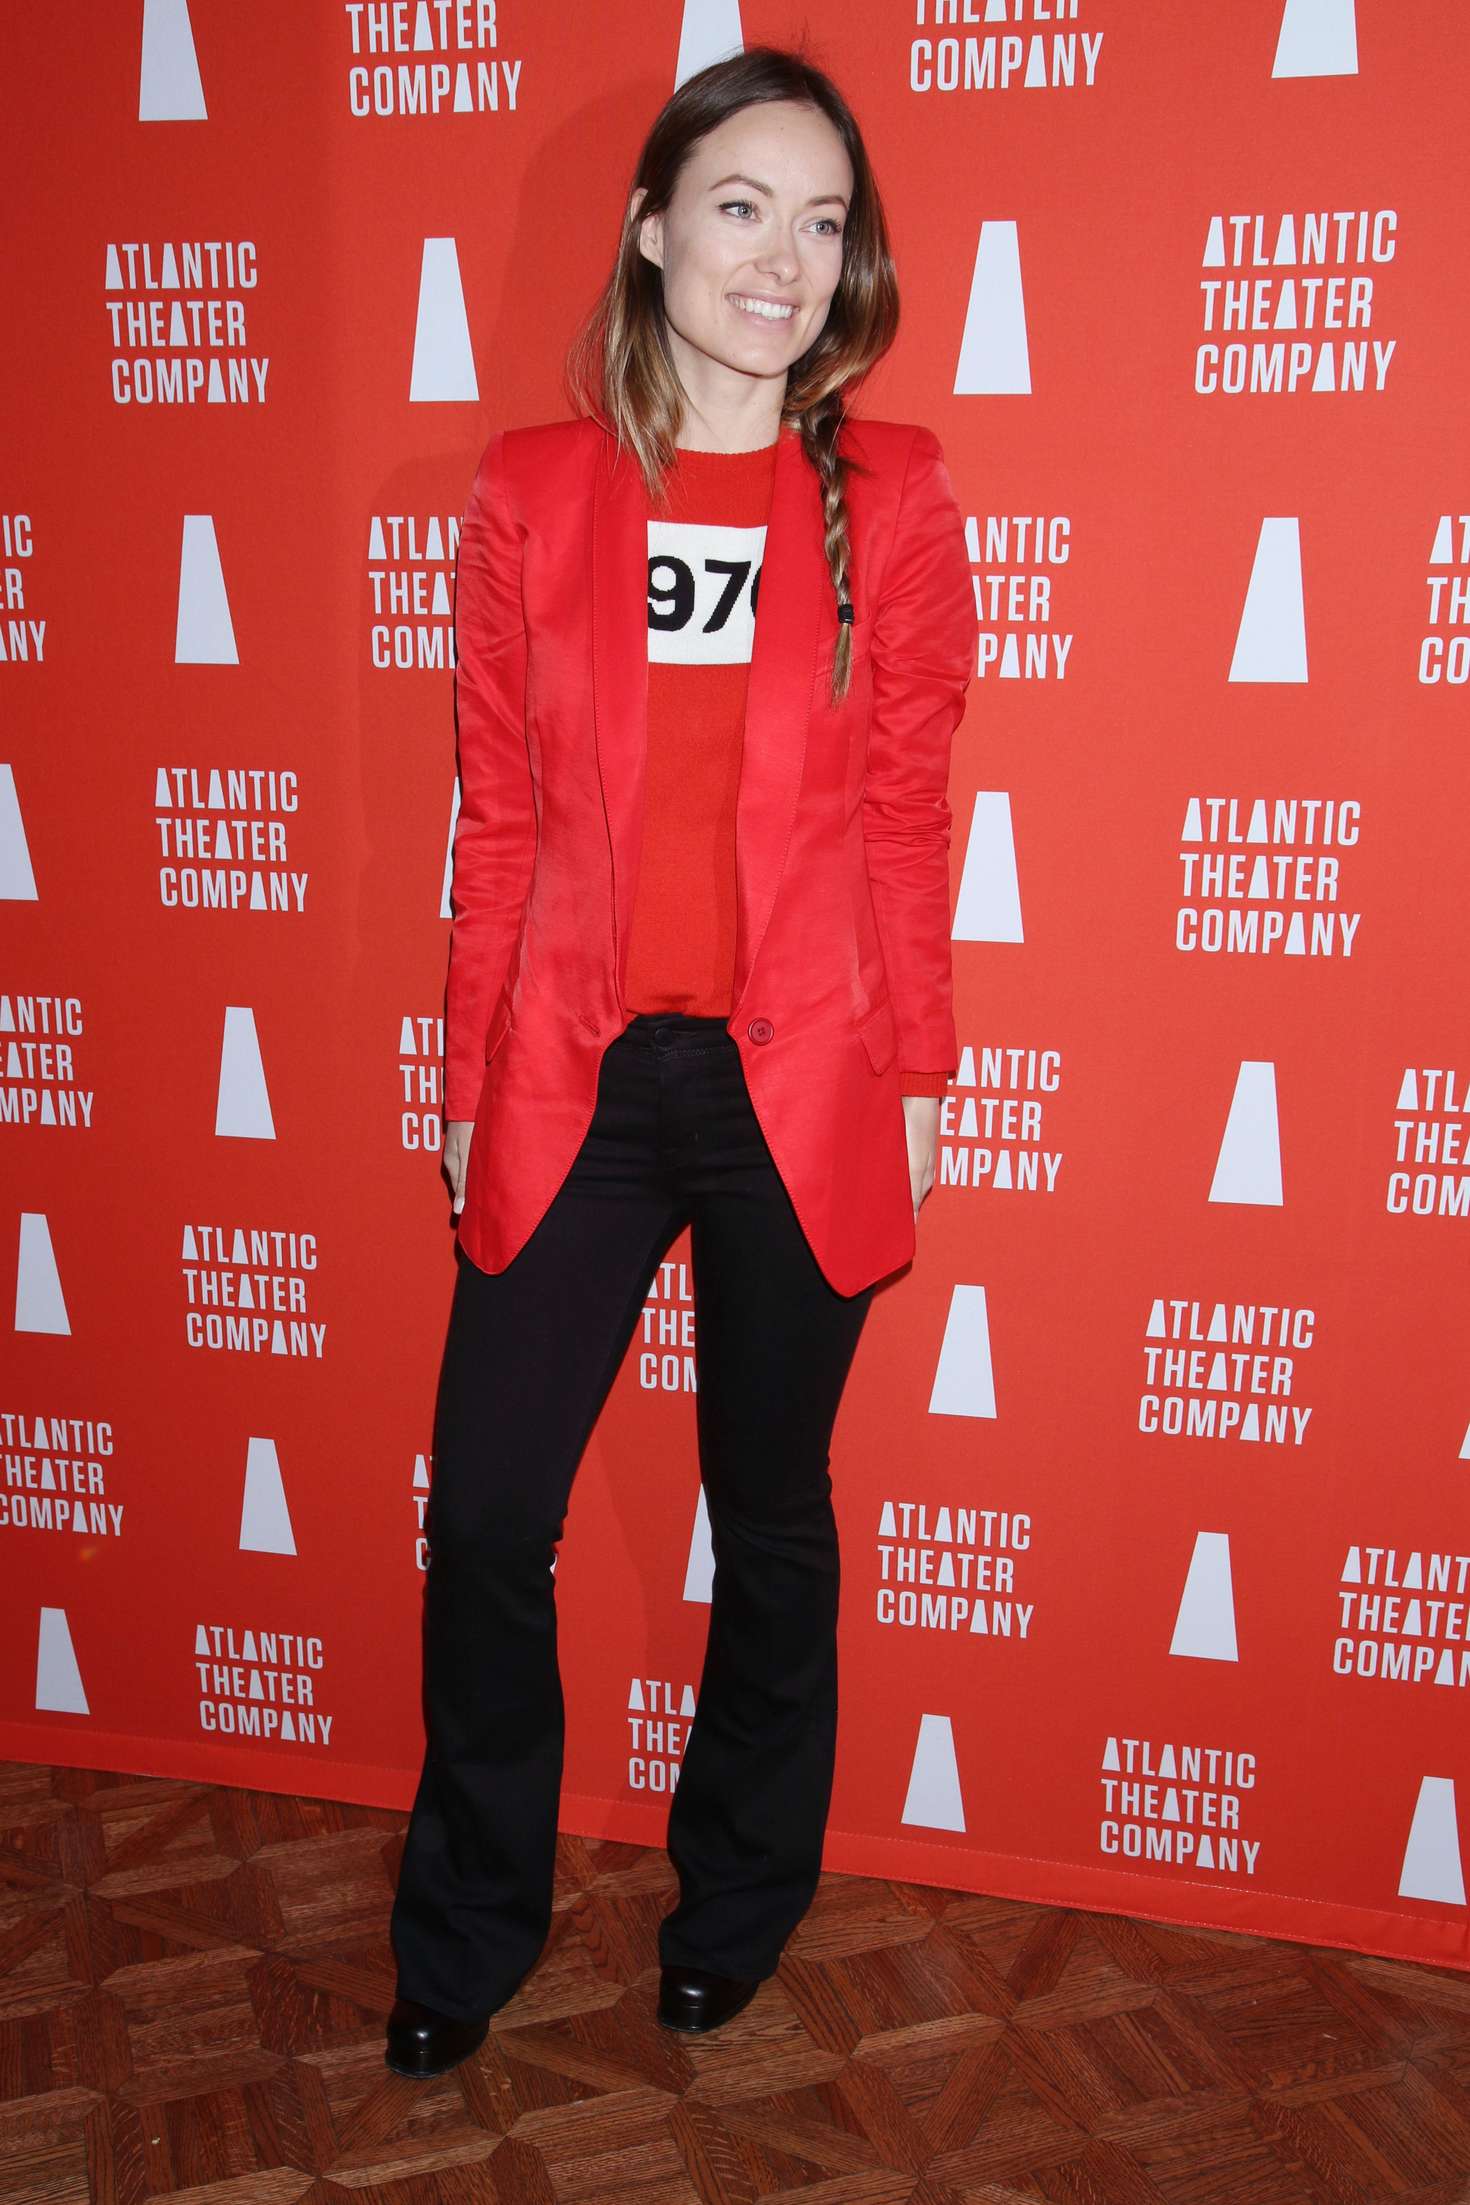 Olivia Wilde â€“ 2016 Atlantic Theater Company Actorâ€™s Choice Gala in NY